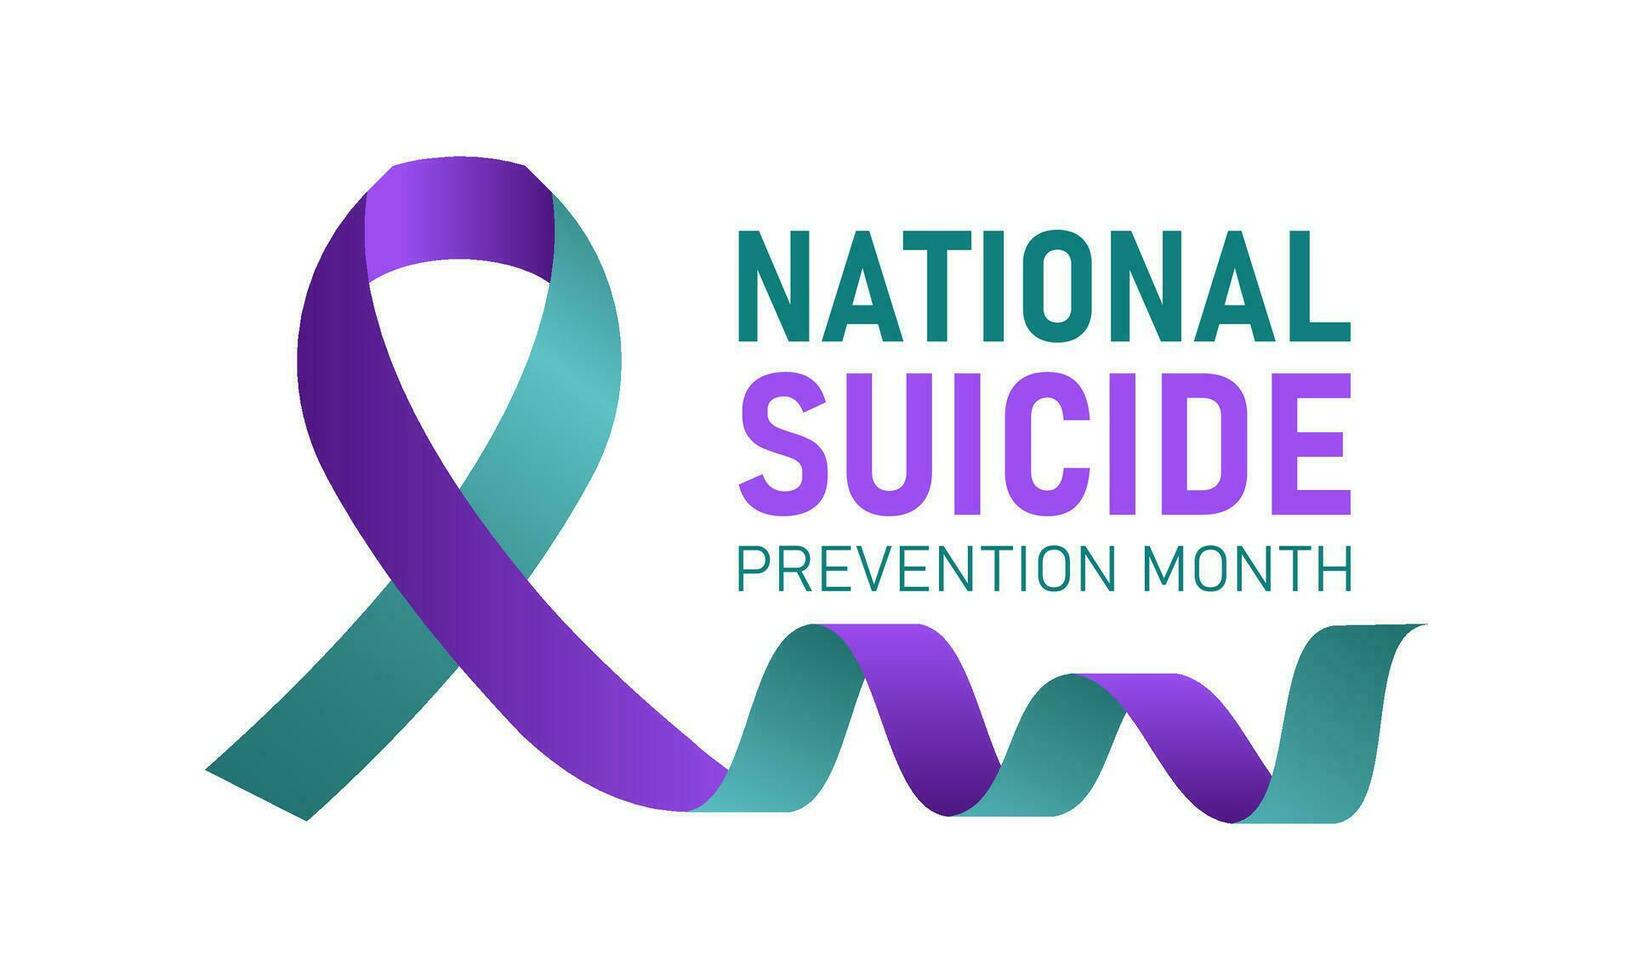 nacional suicidio prevención mes es observado cada año en septiembre. septiembre es nacional suicidio prevención conciencia mes. vector modelo para bandera, saludo tarjeta, póster con antecedentes.